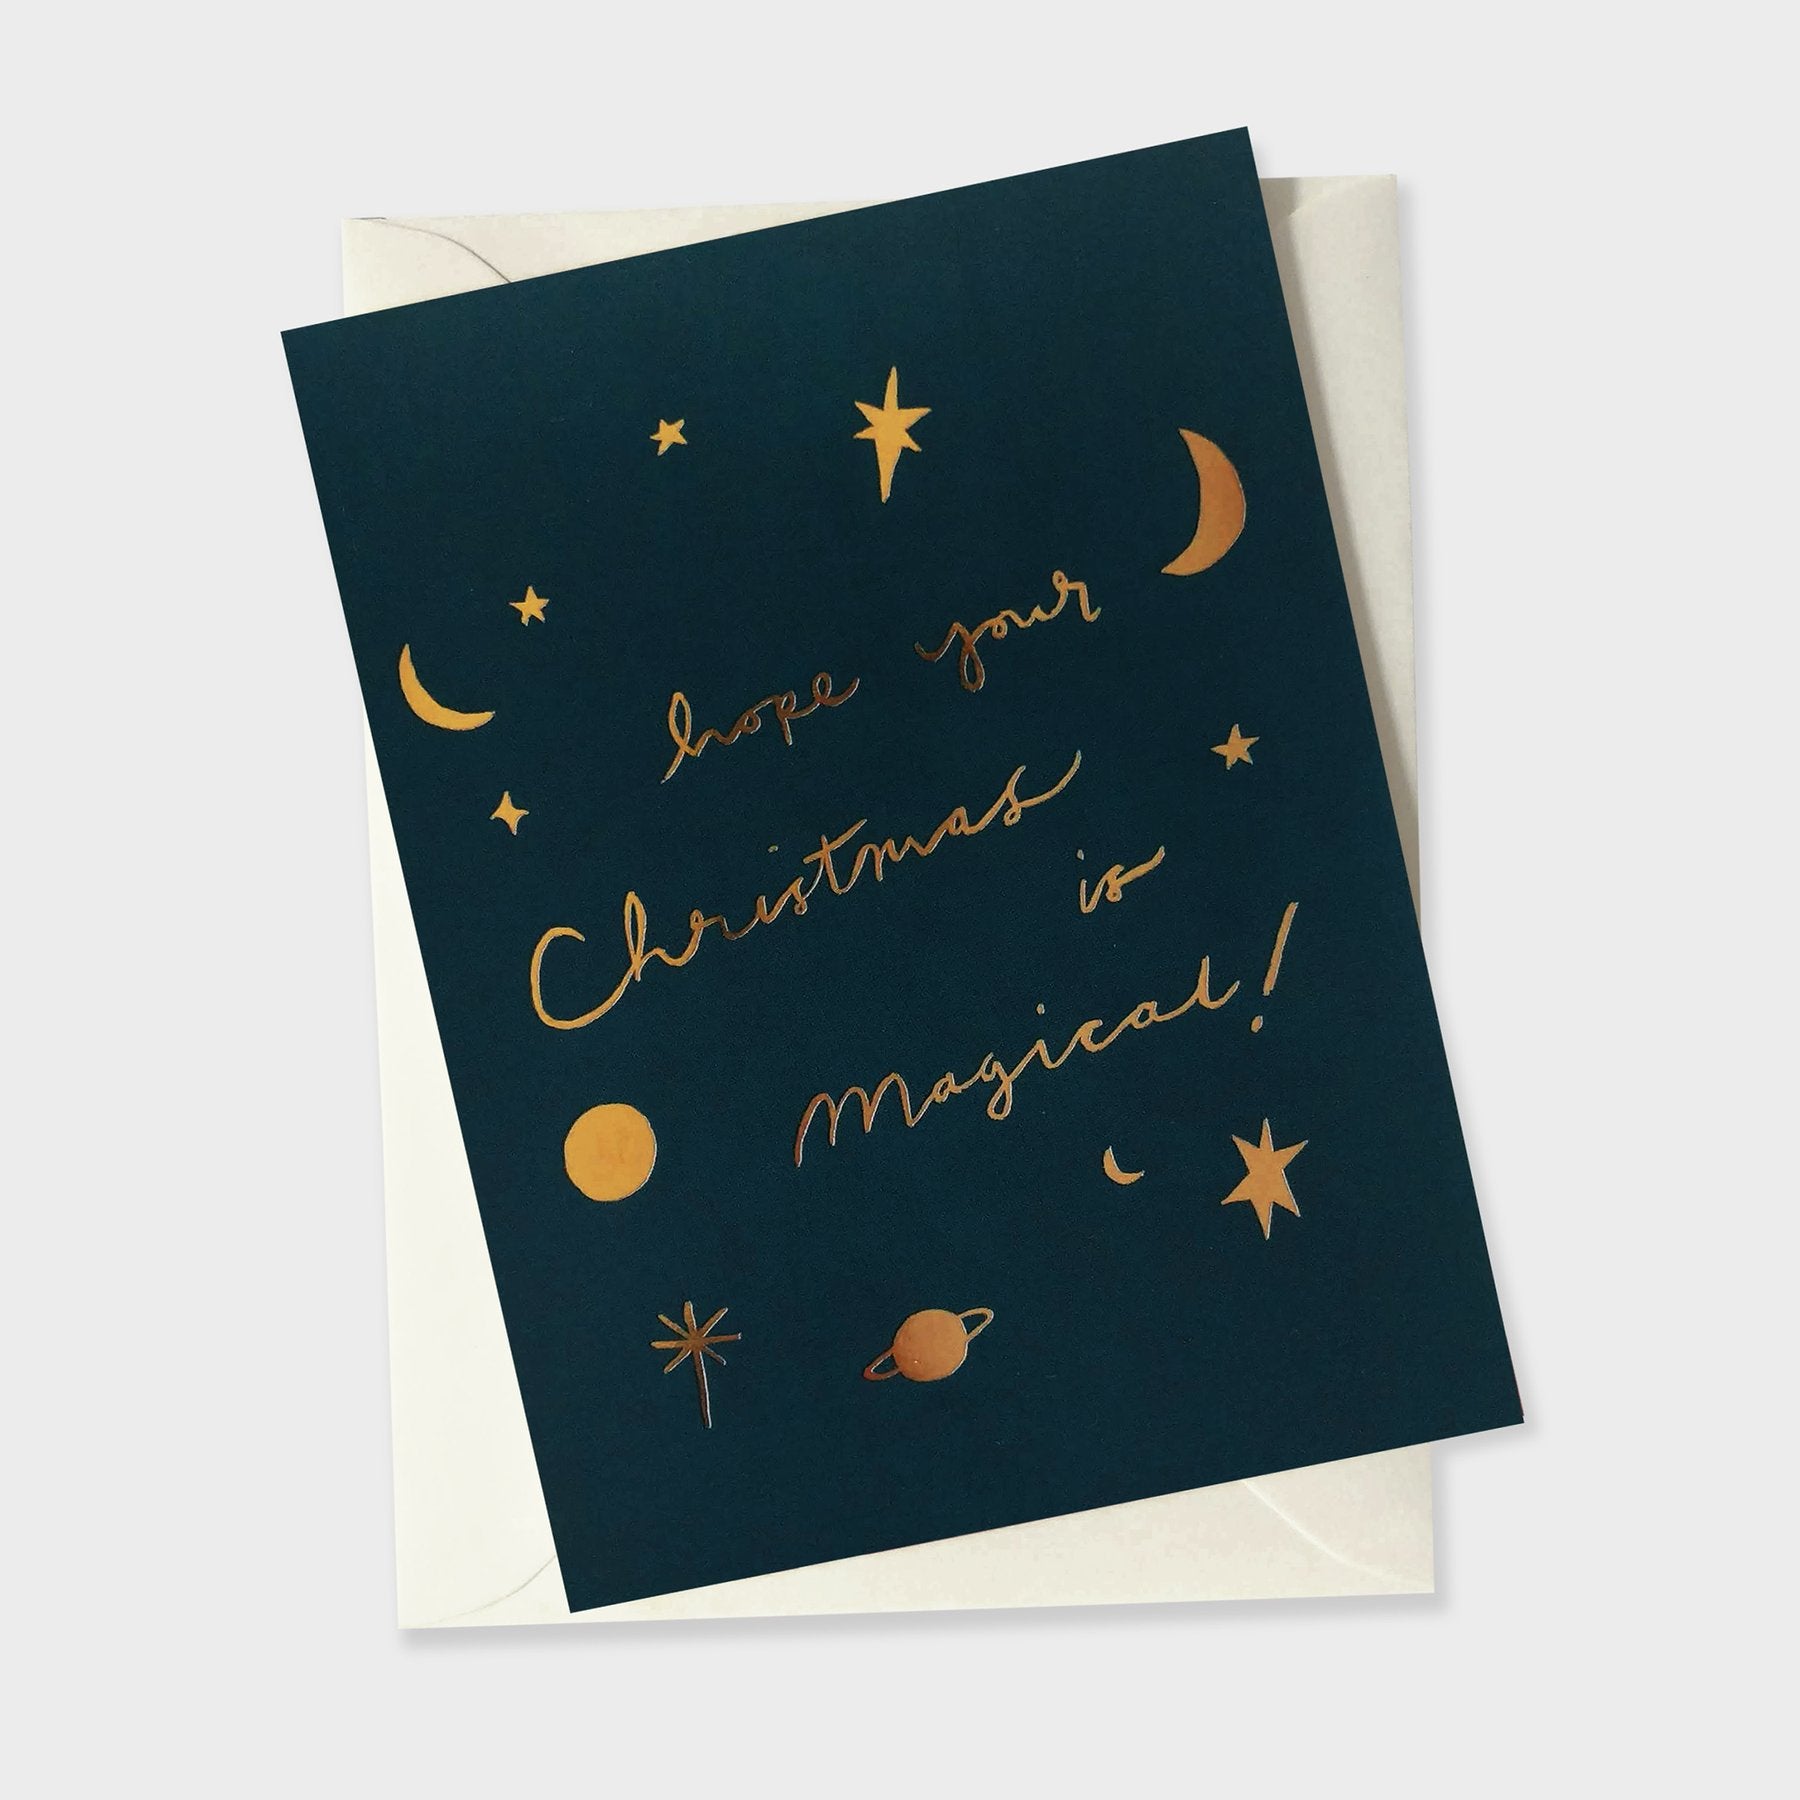 Annie Dornan Smith - Celestial Magical Christmas Card